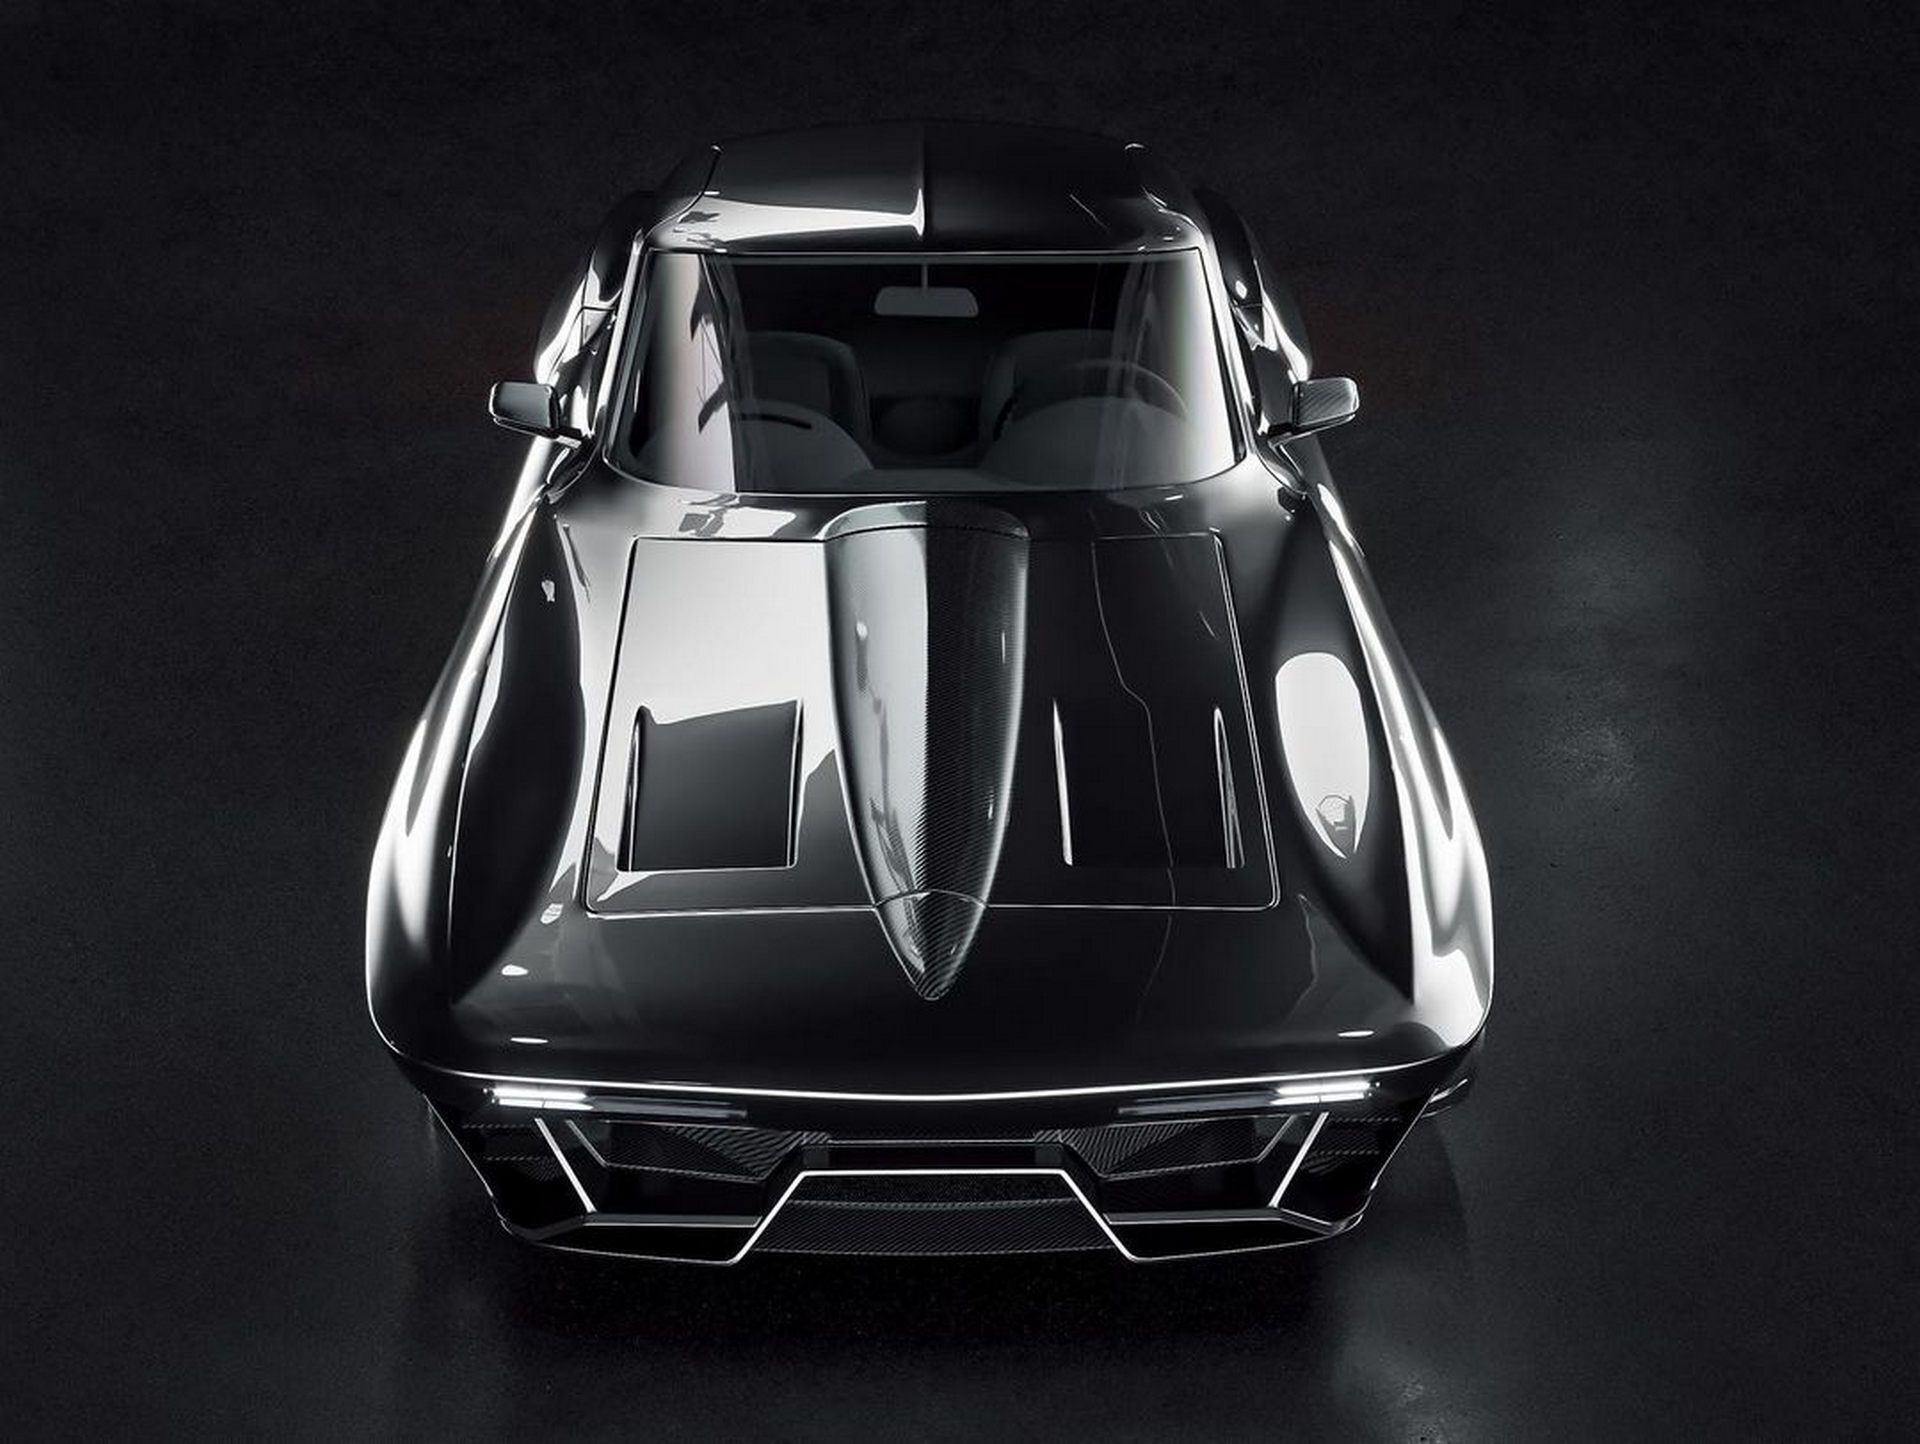 За основу для створення новинки було обрано одного з культових американських спортивних автомобілів – Chevrolet Corvette С2 з кузовом купе